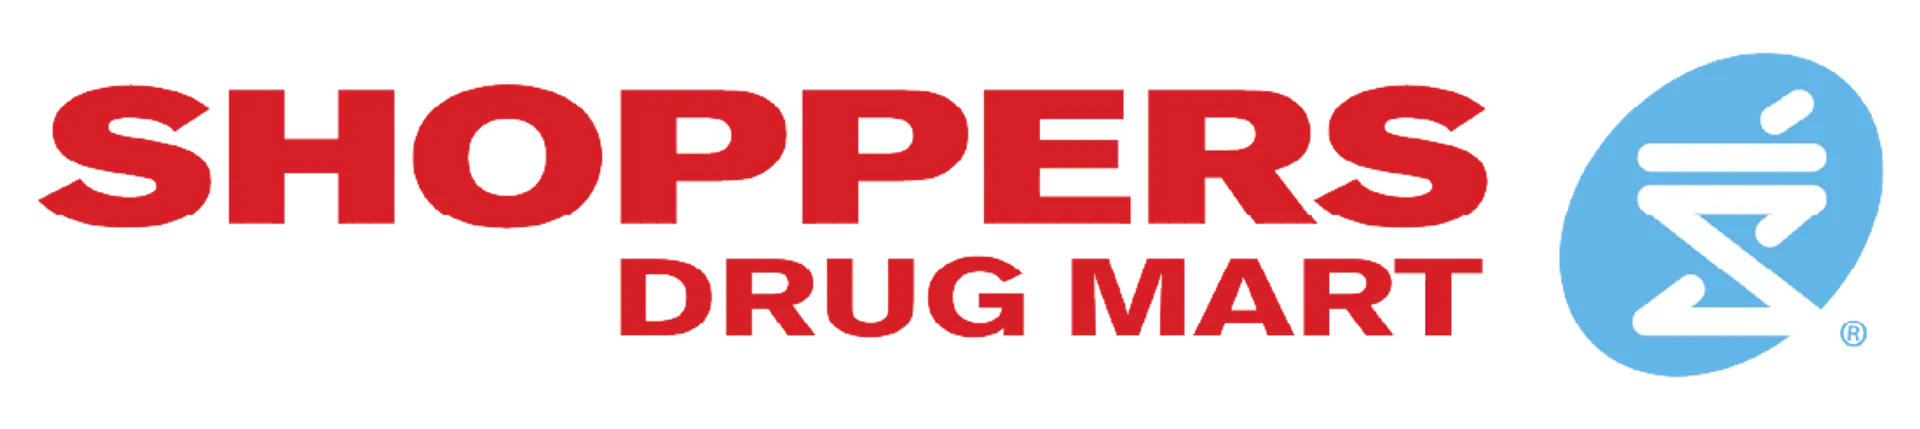 SHOPPERS DRUG MART logo